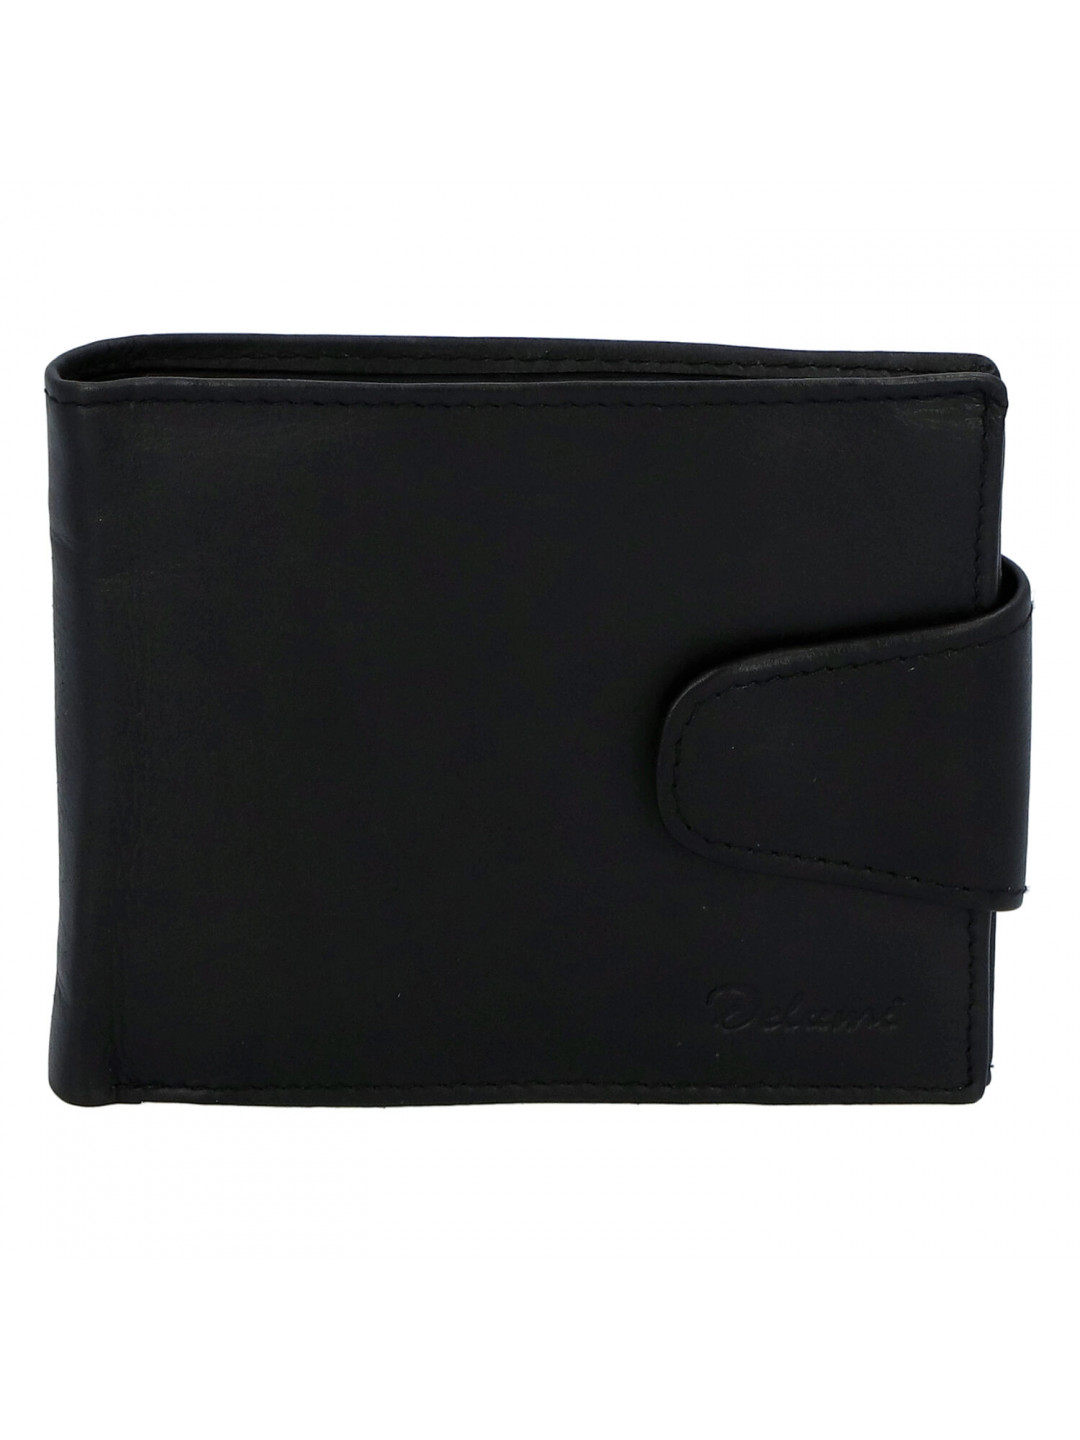 Pánská kožená peněženka černá – Delami 11816A